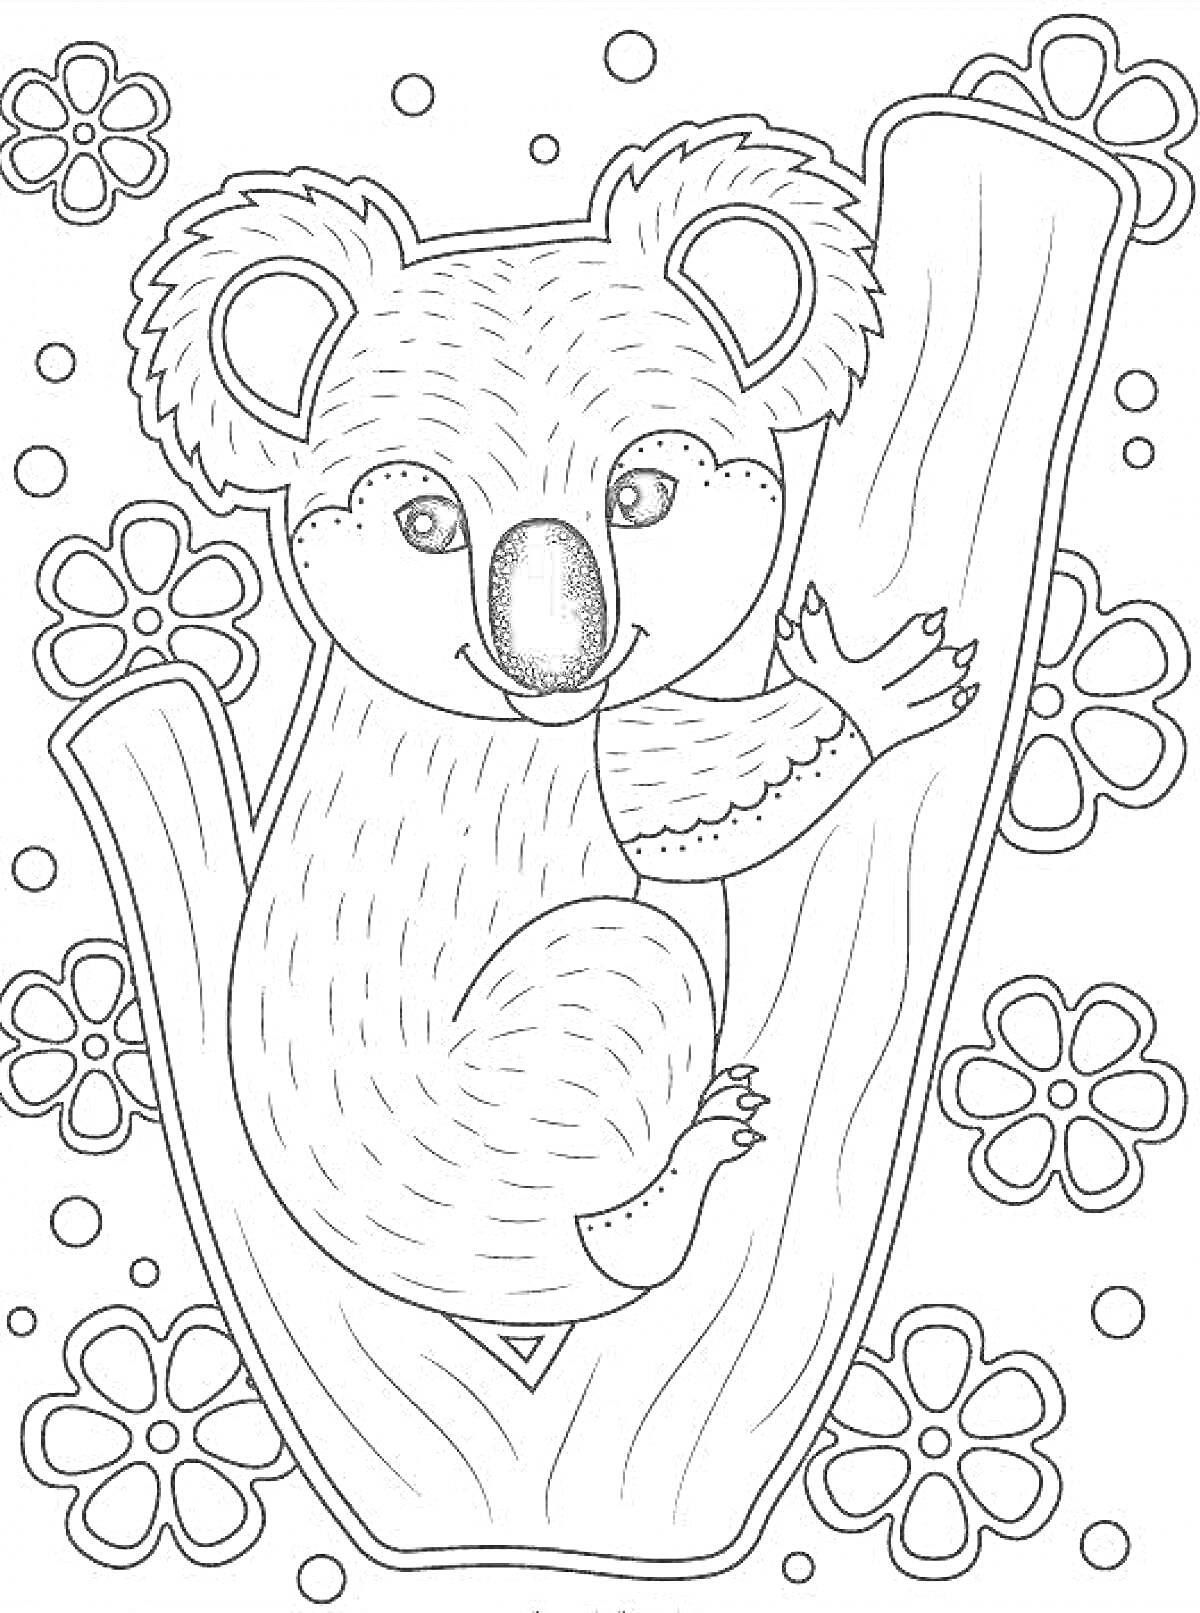 Раскраска коала на дереве с цветами и точками